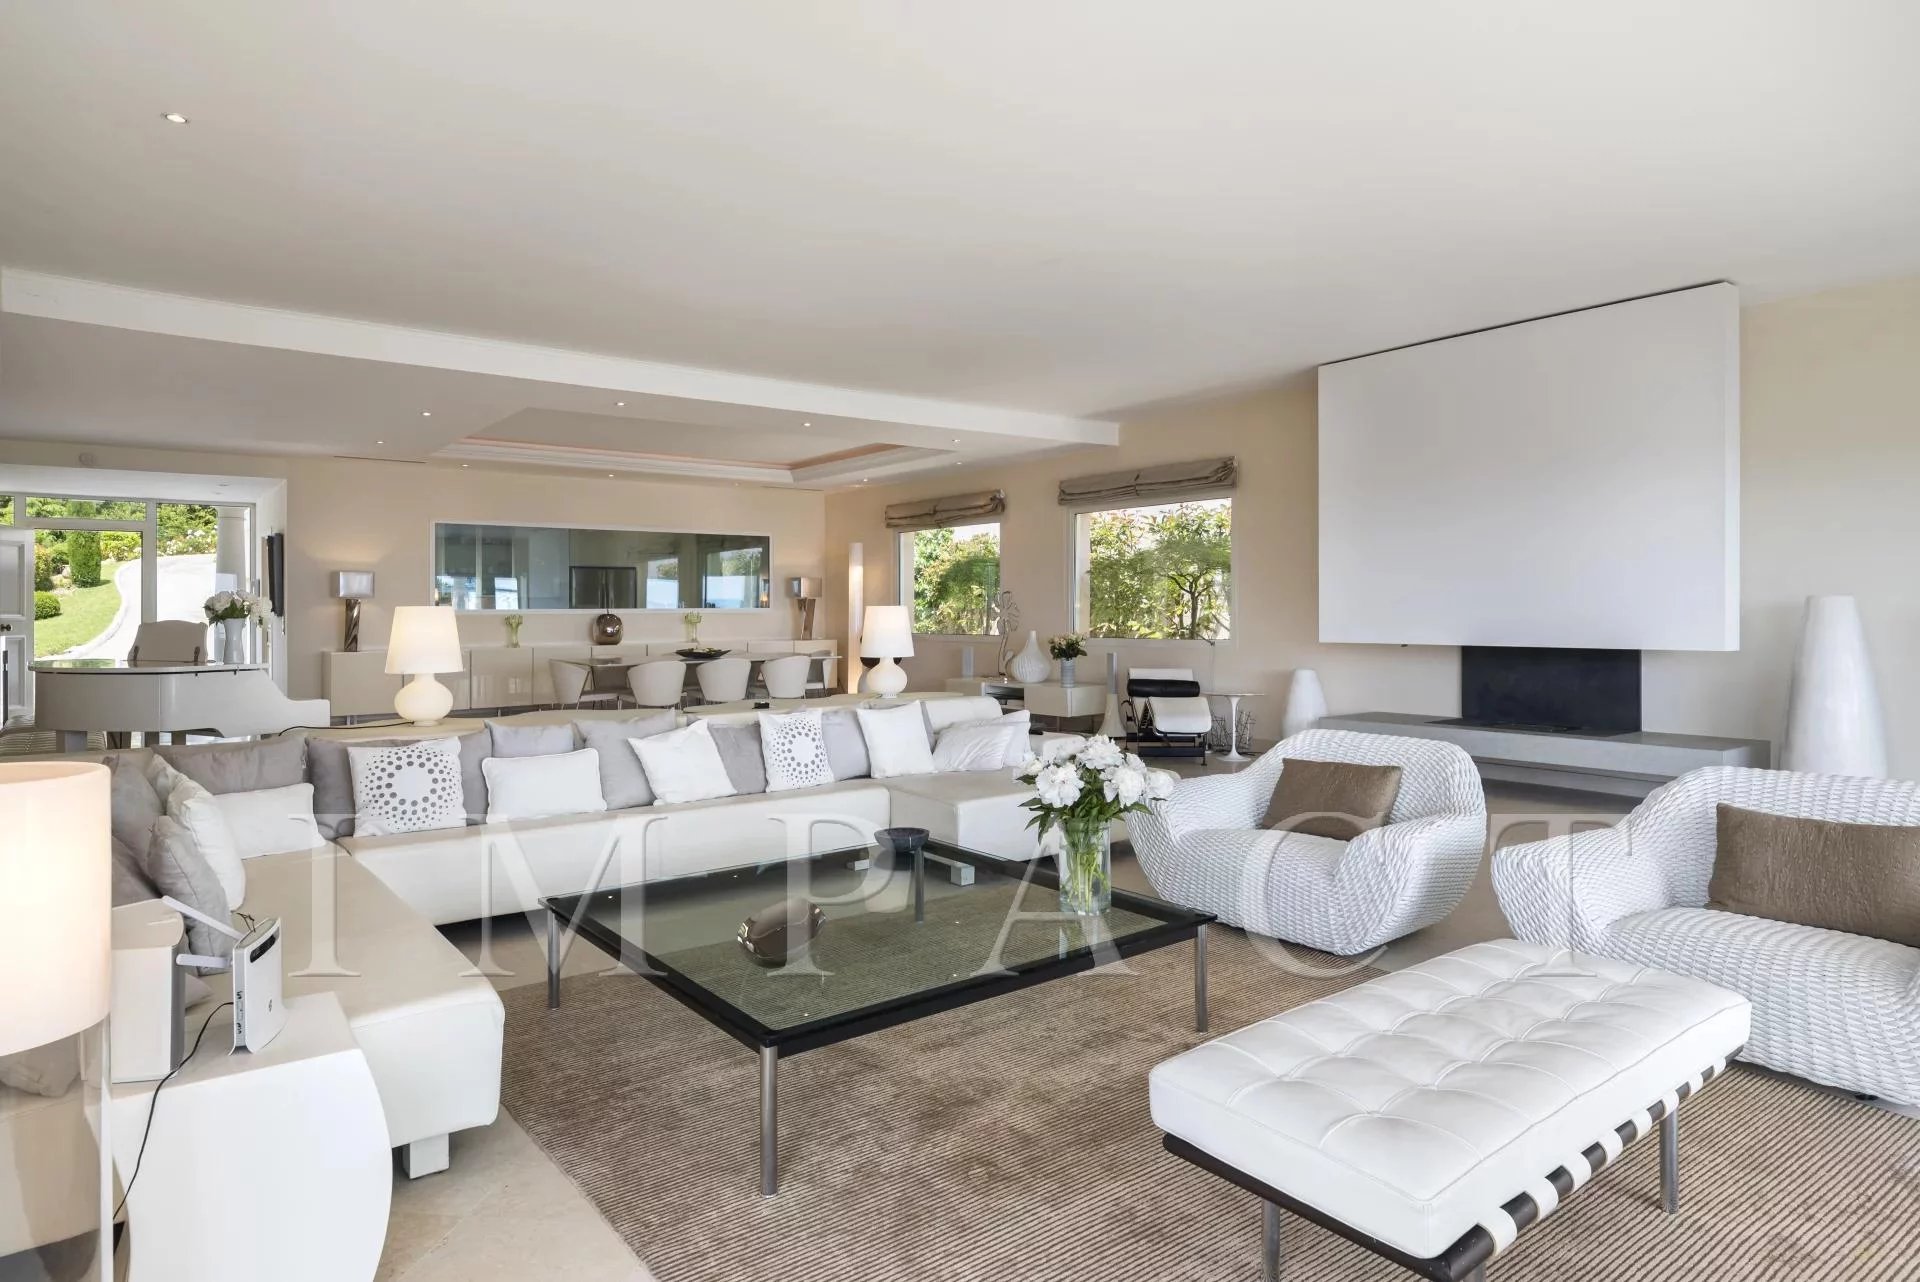 Superbe villa à louer sur les hauteurs de Cannes